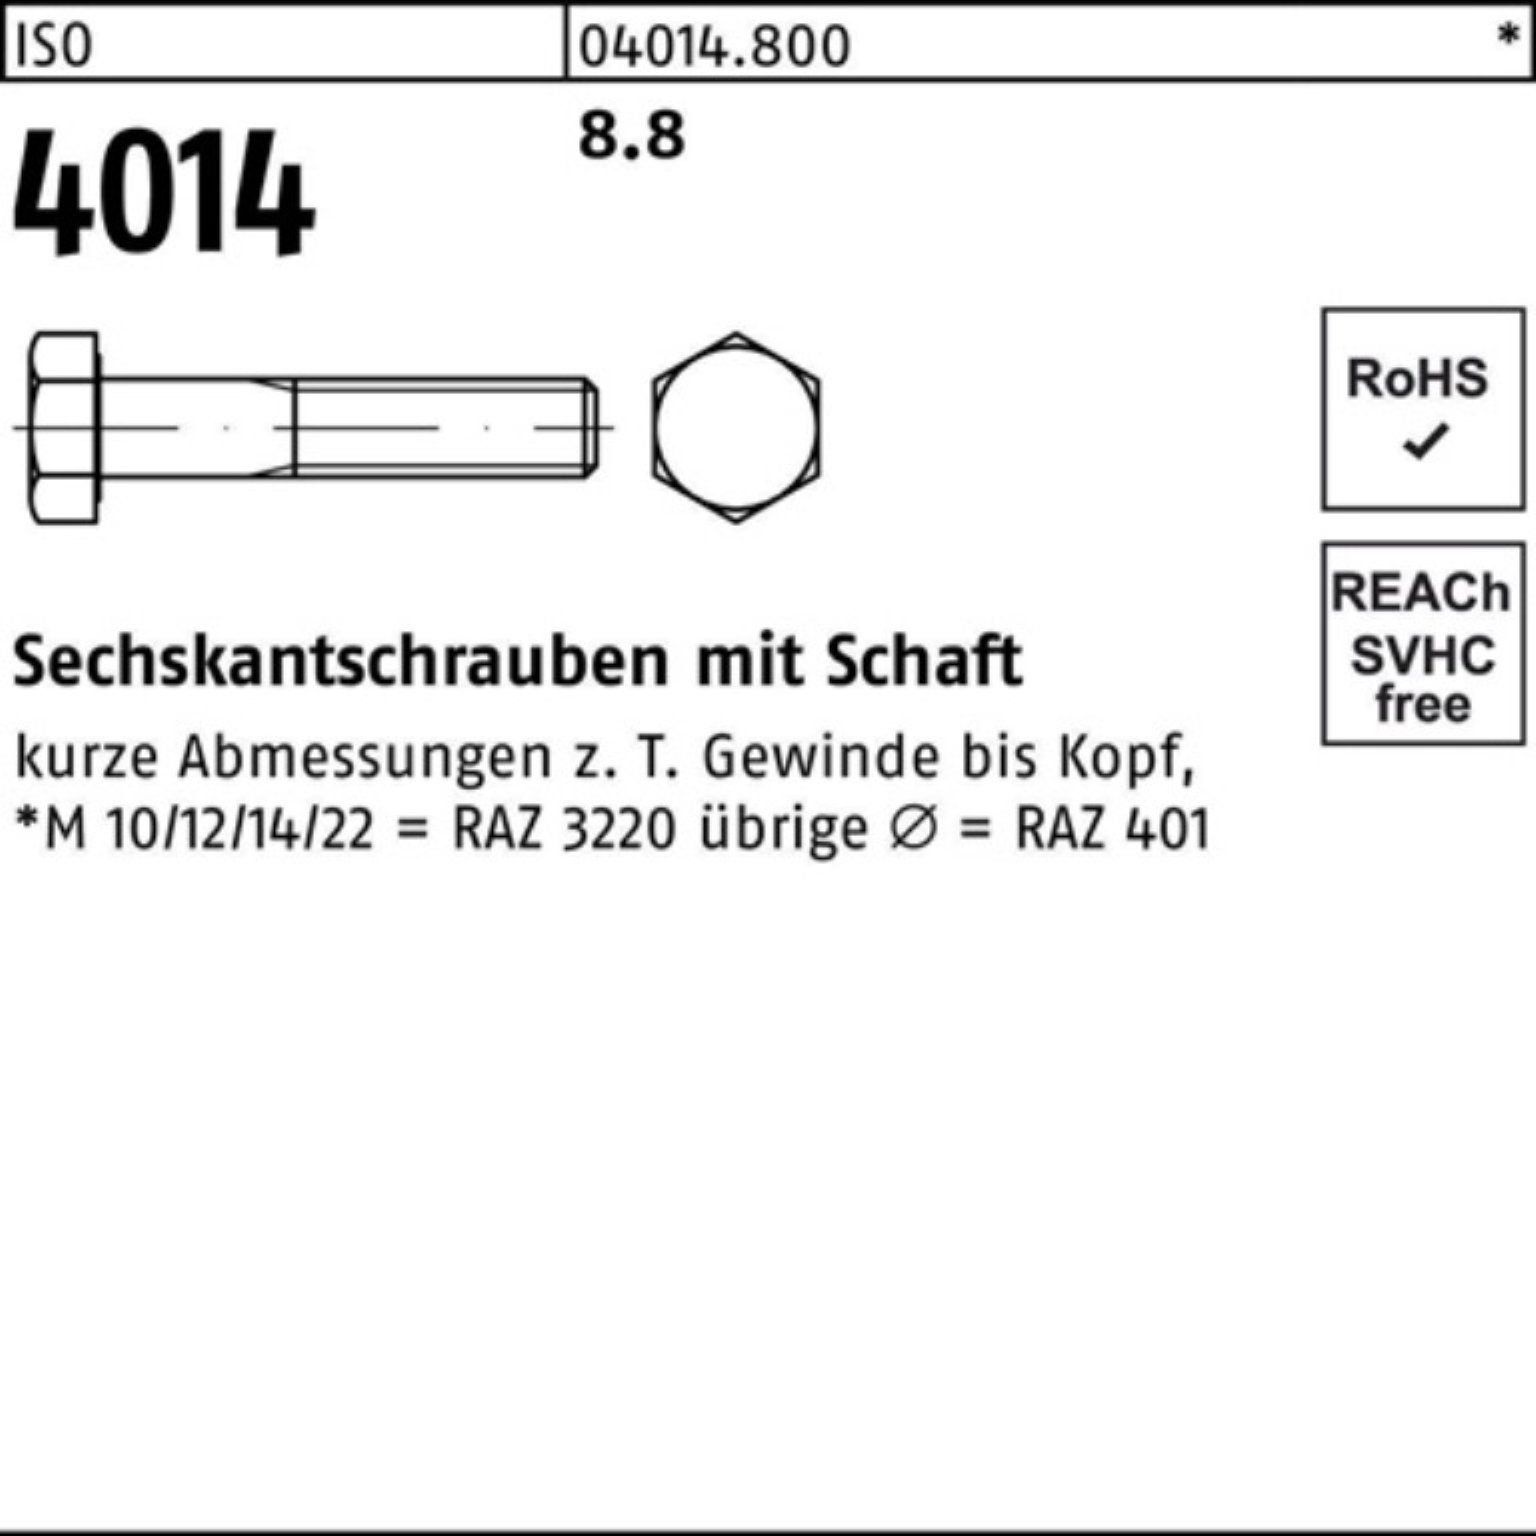 Schaft Sechskantschraube 8.8 360 M24x Bufab 1 4014 ISO 100er Sechskantschraube Stück Pack ISO